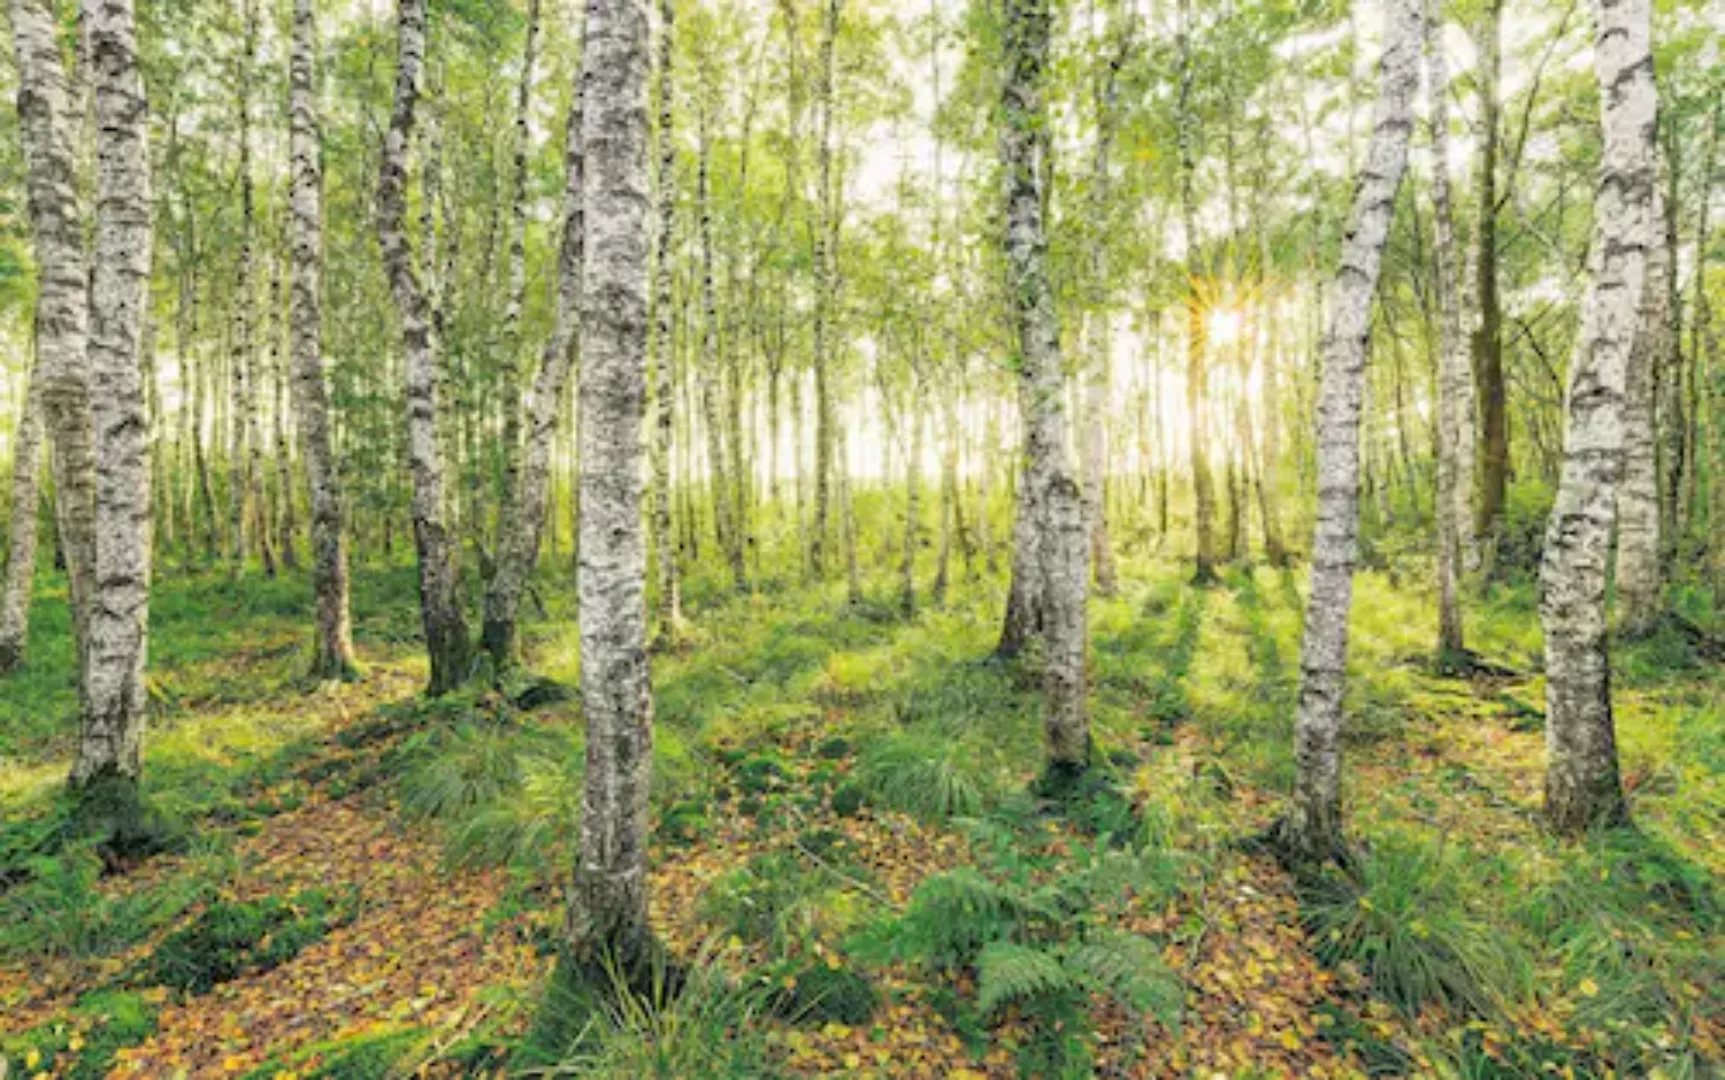 Komar Vliestapete »Birch Trees« günstig online kaufen